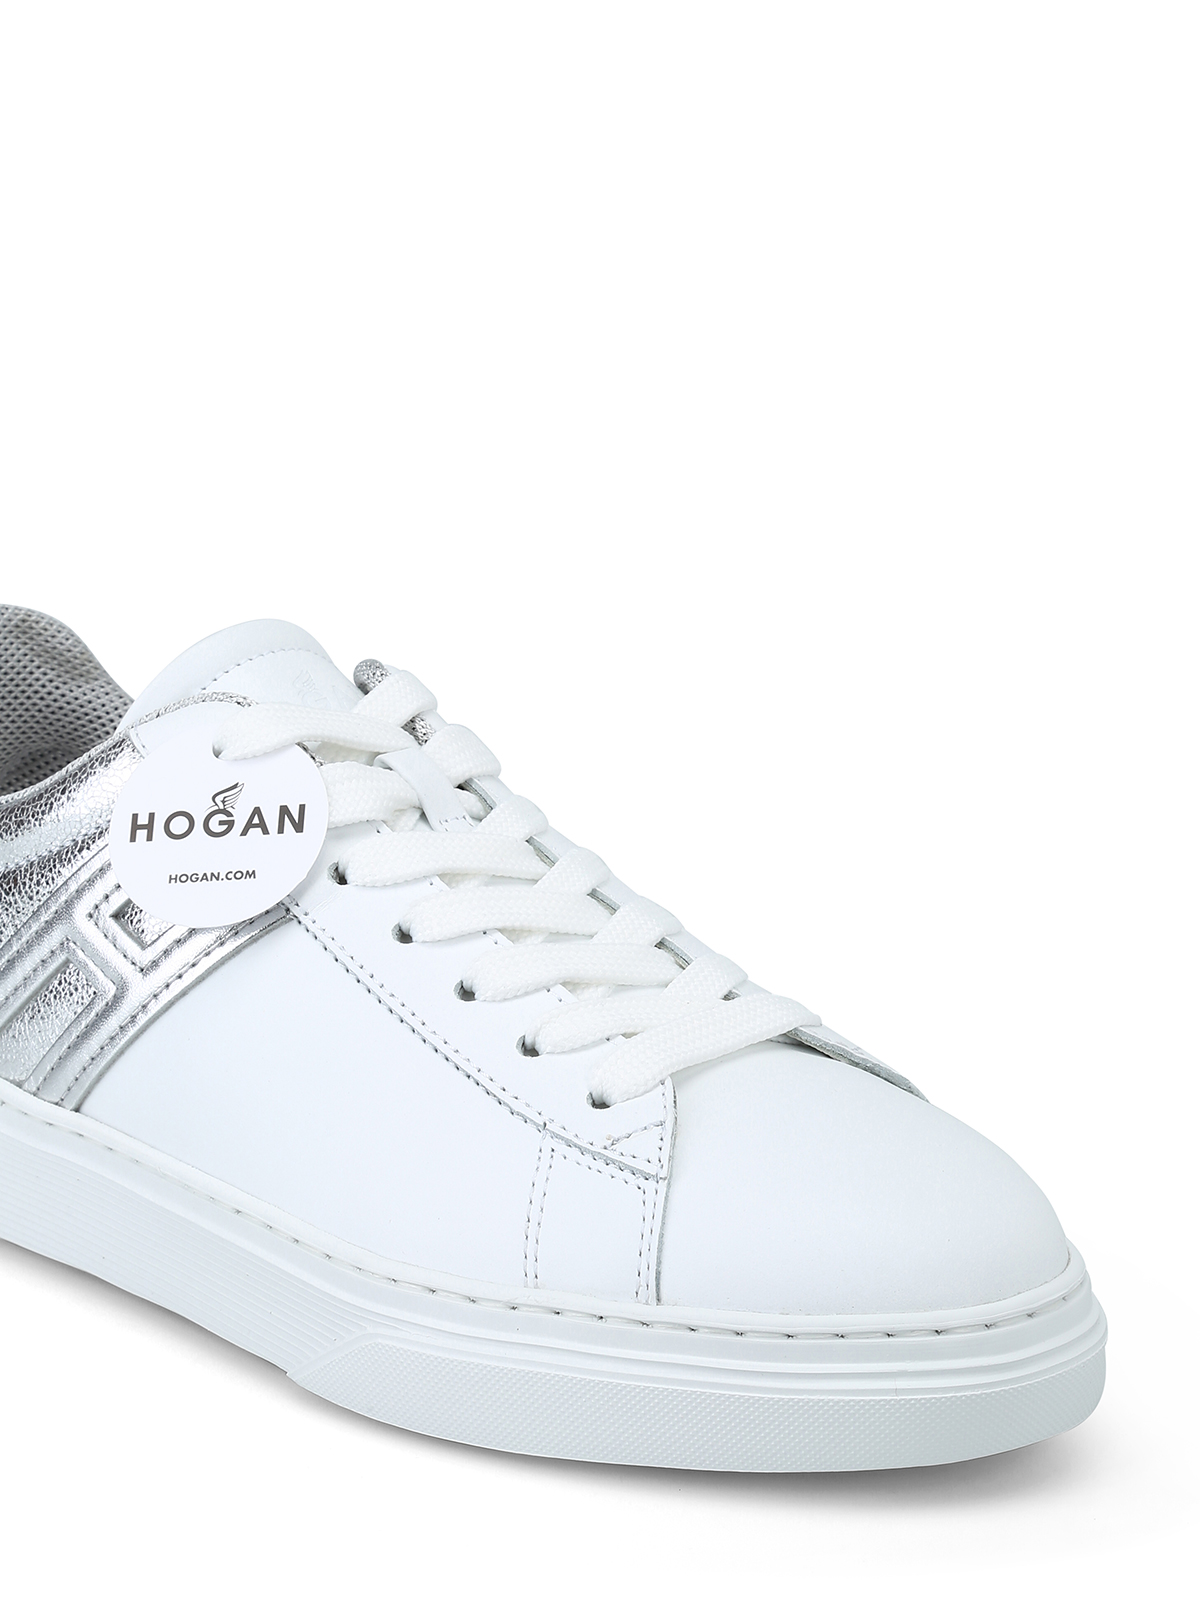 hogan h365 sneakers